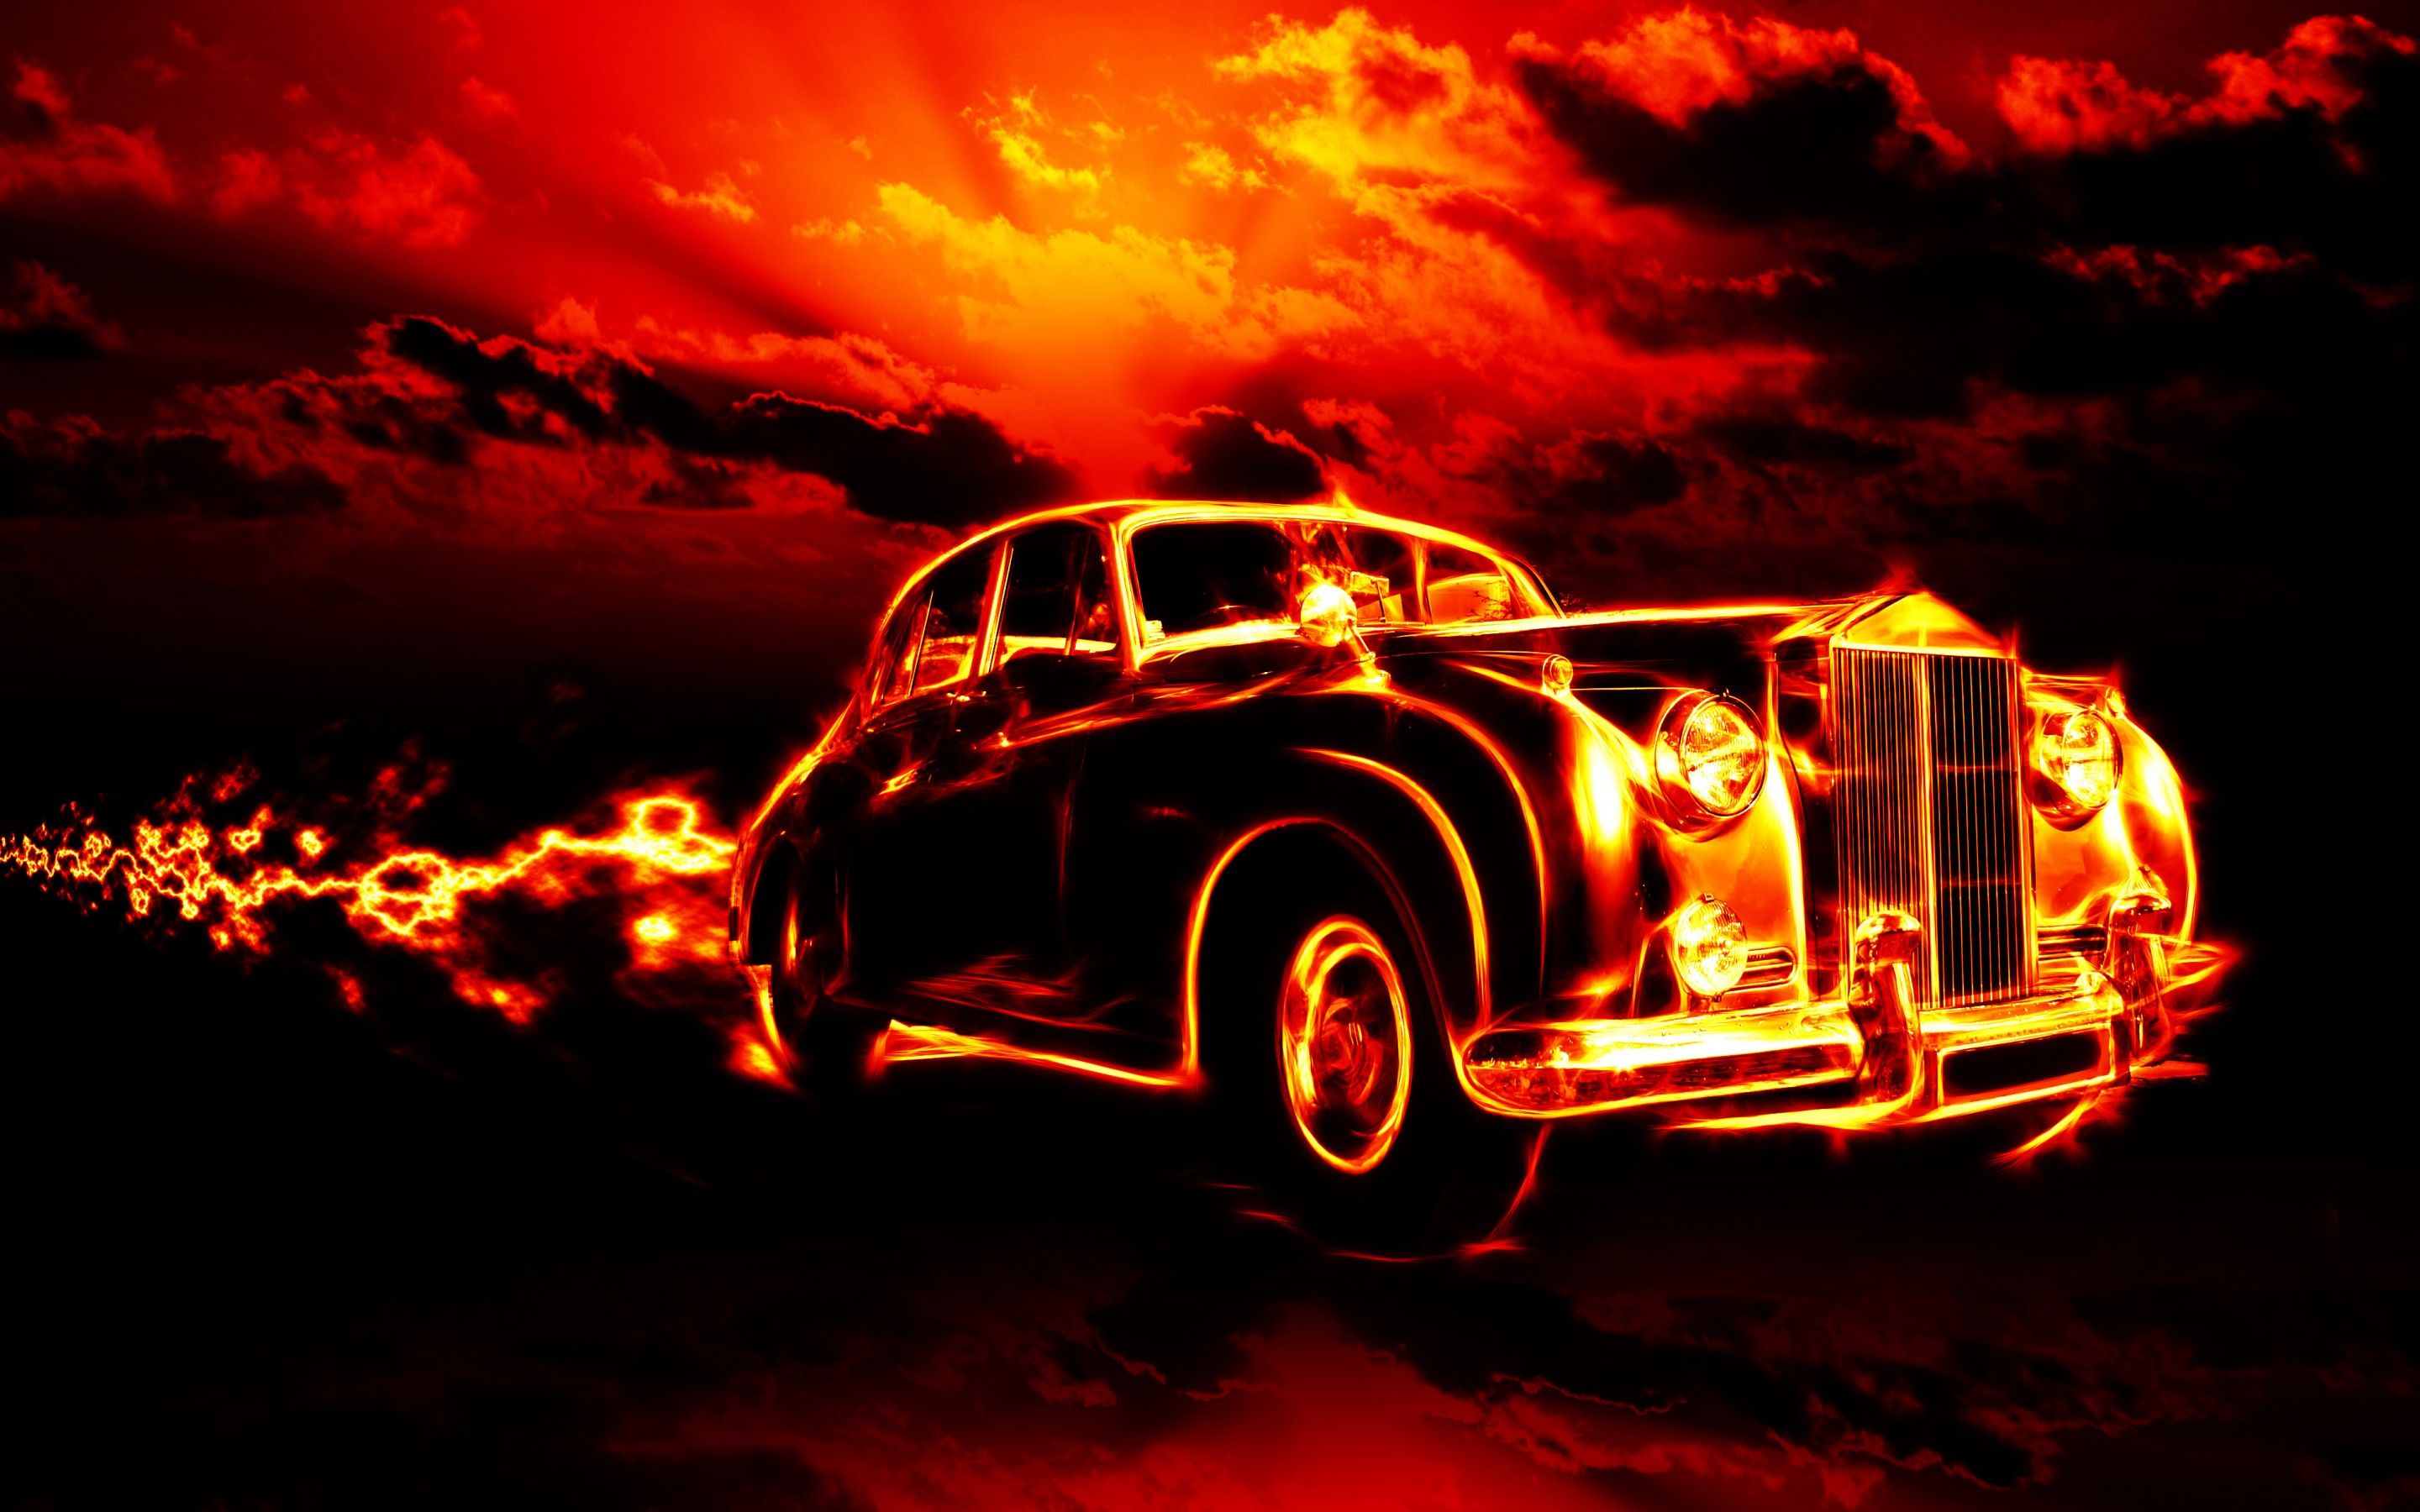 Fire Classic Car HD Wallpaper For Deskx1800, Wallpaper13.com